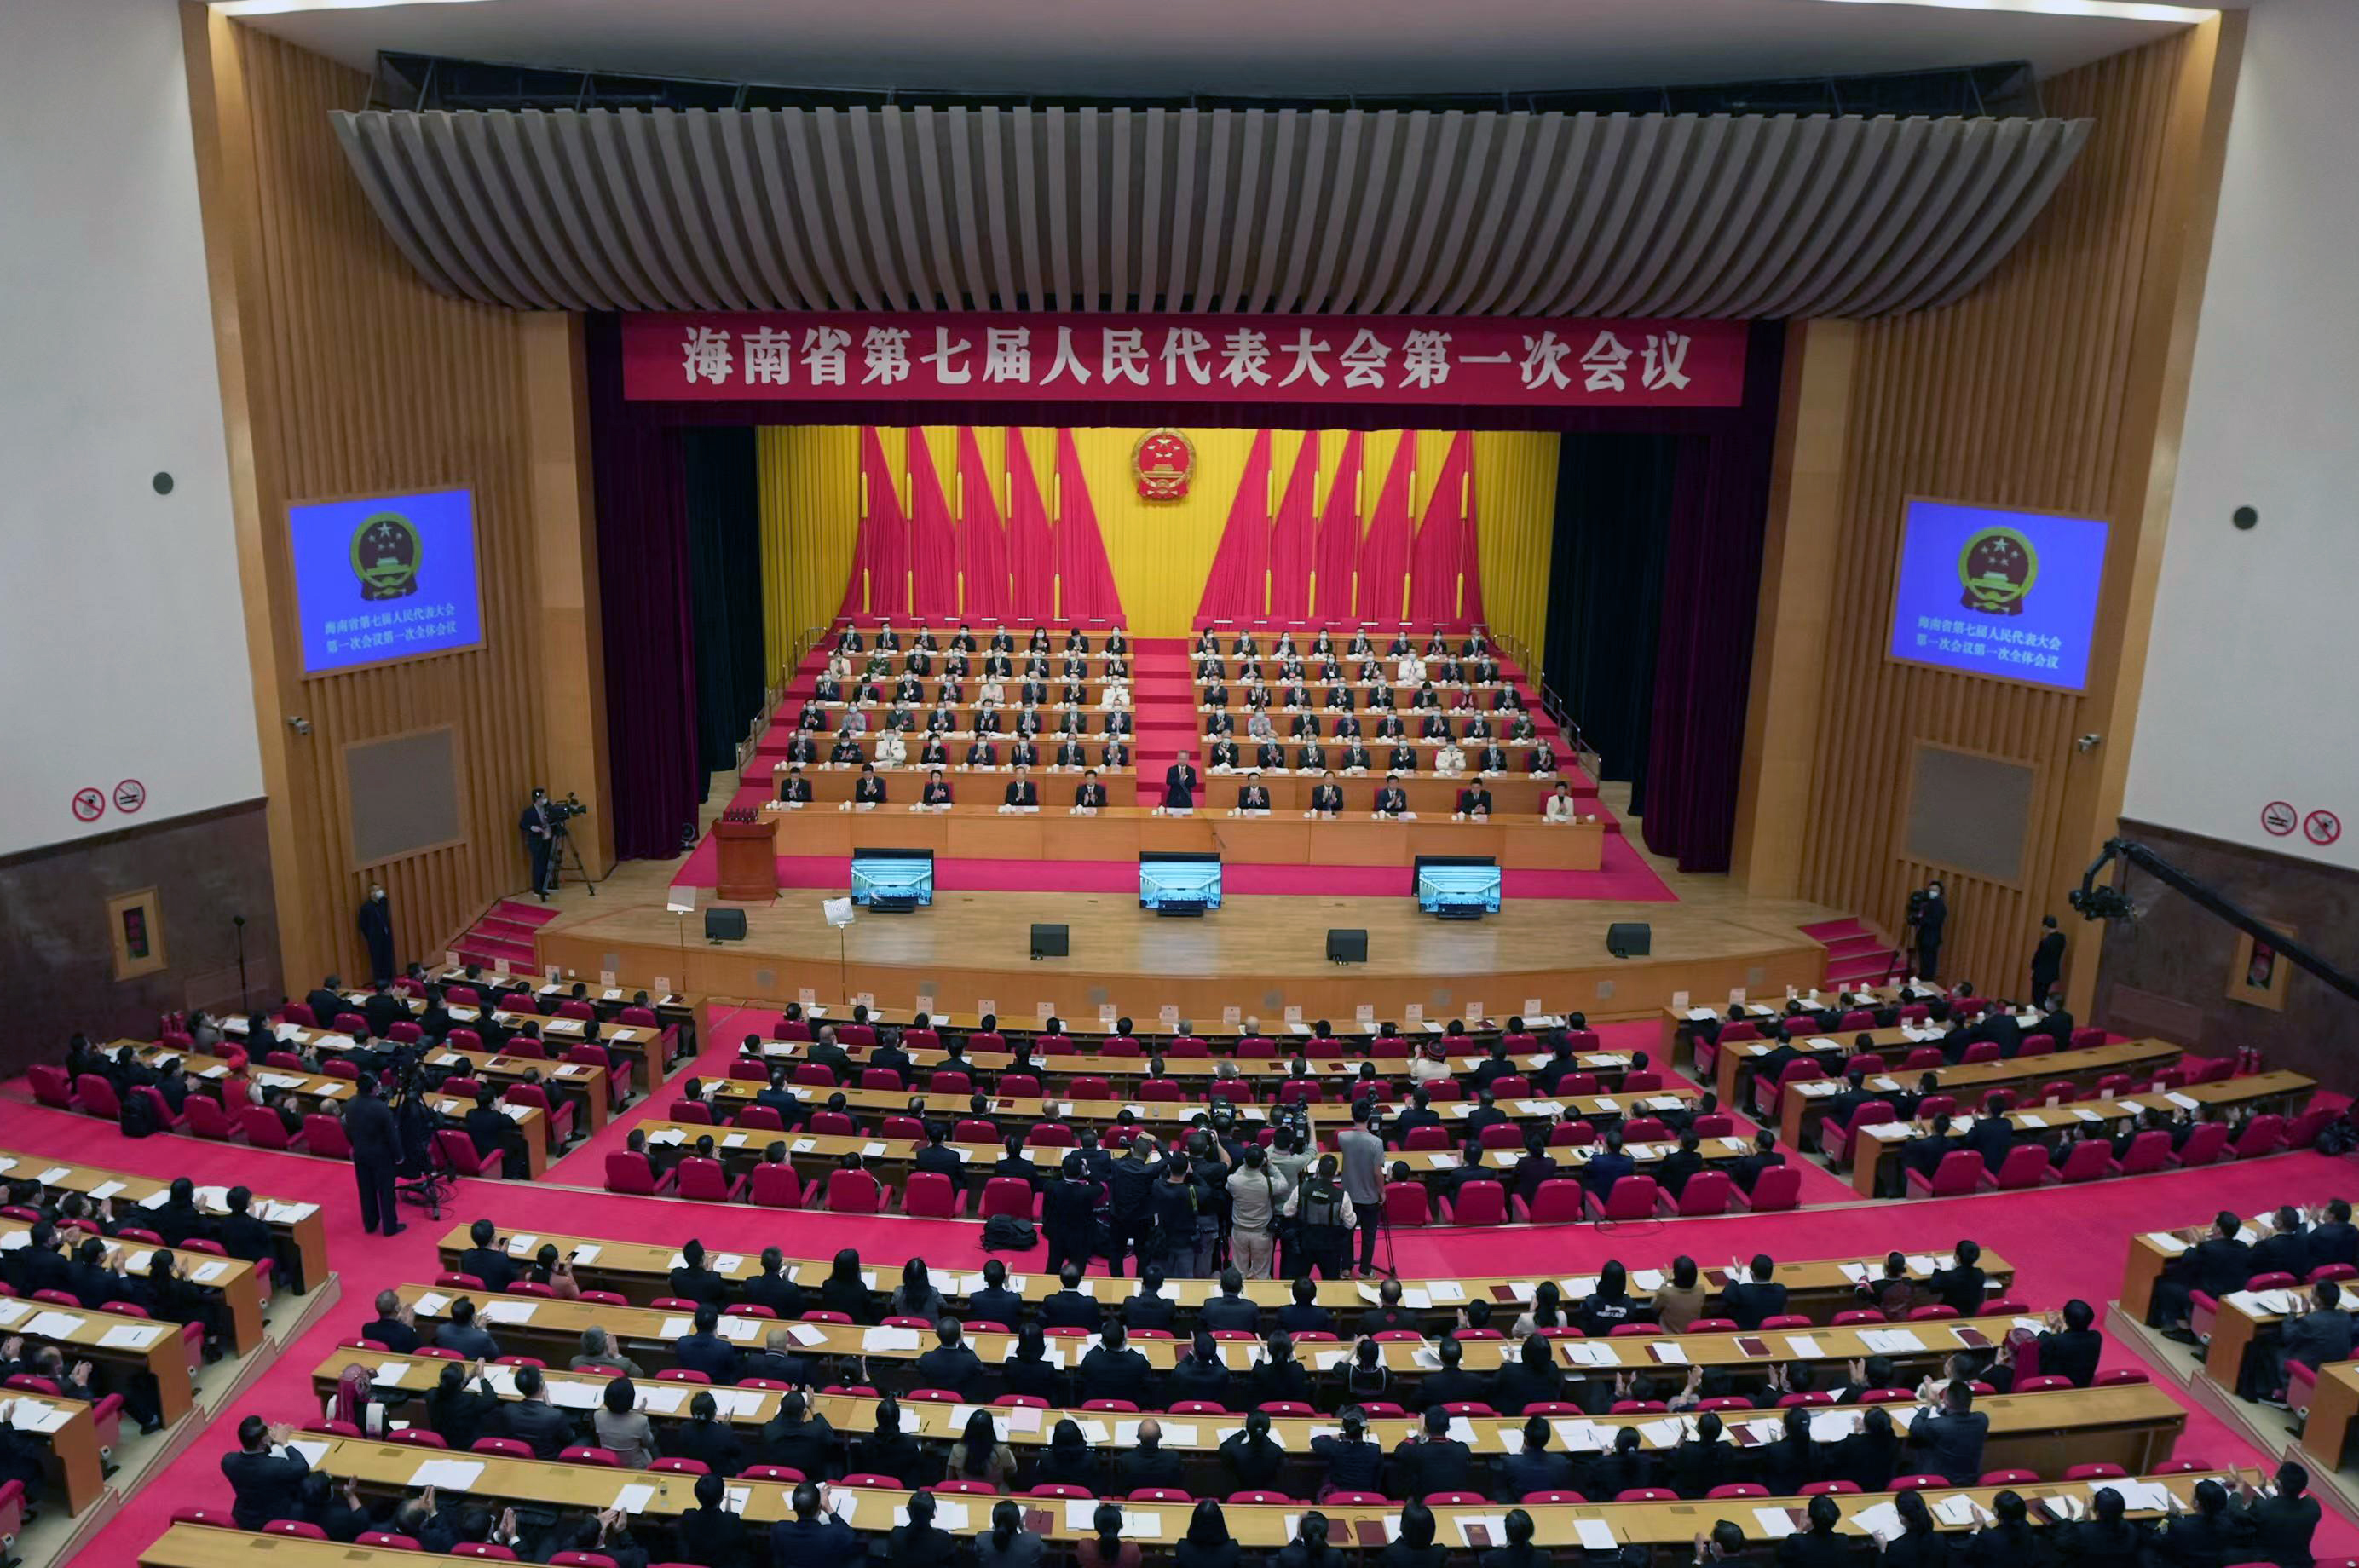 海南省第七屆人民代表大會